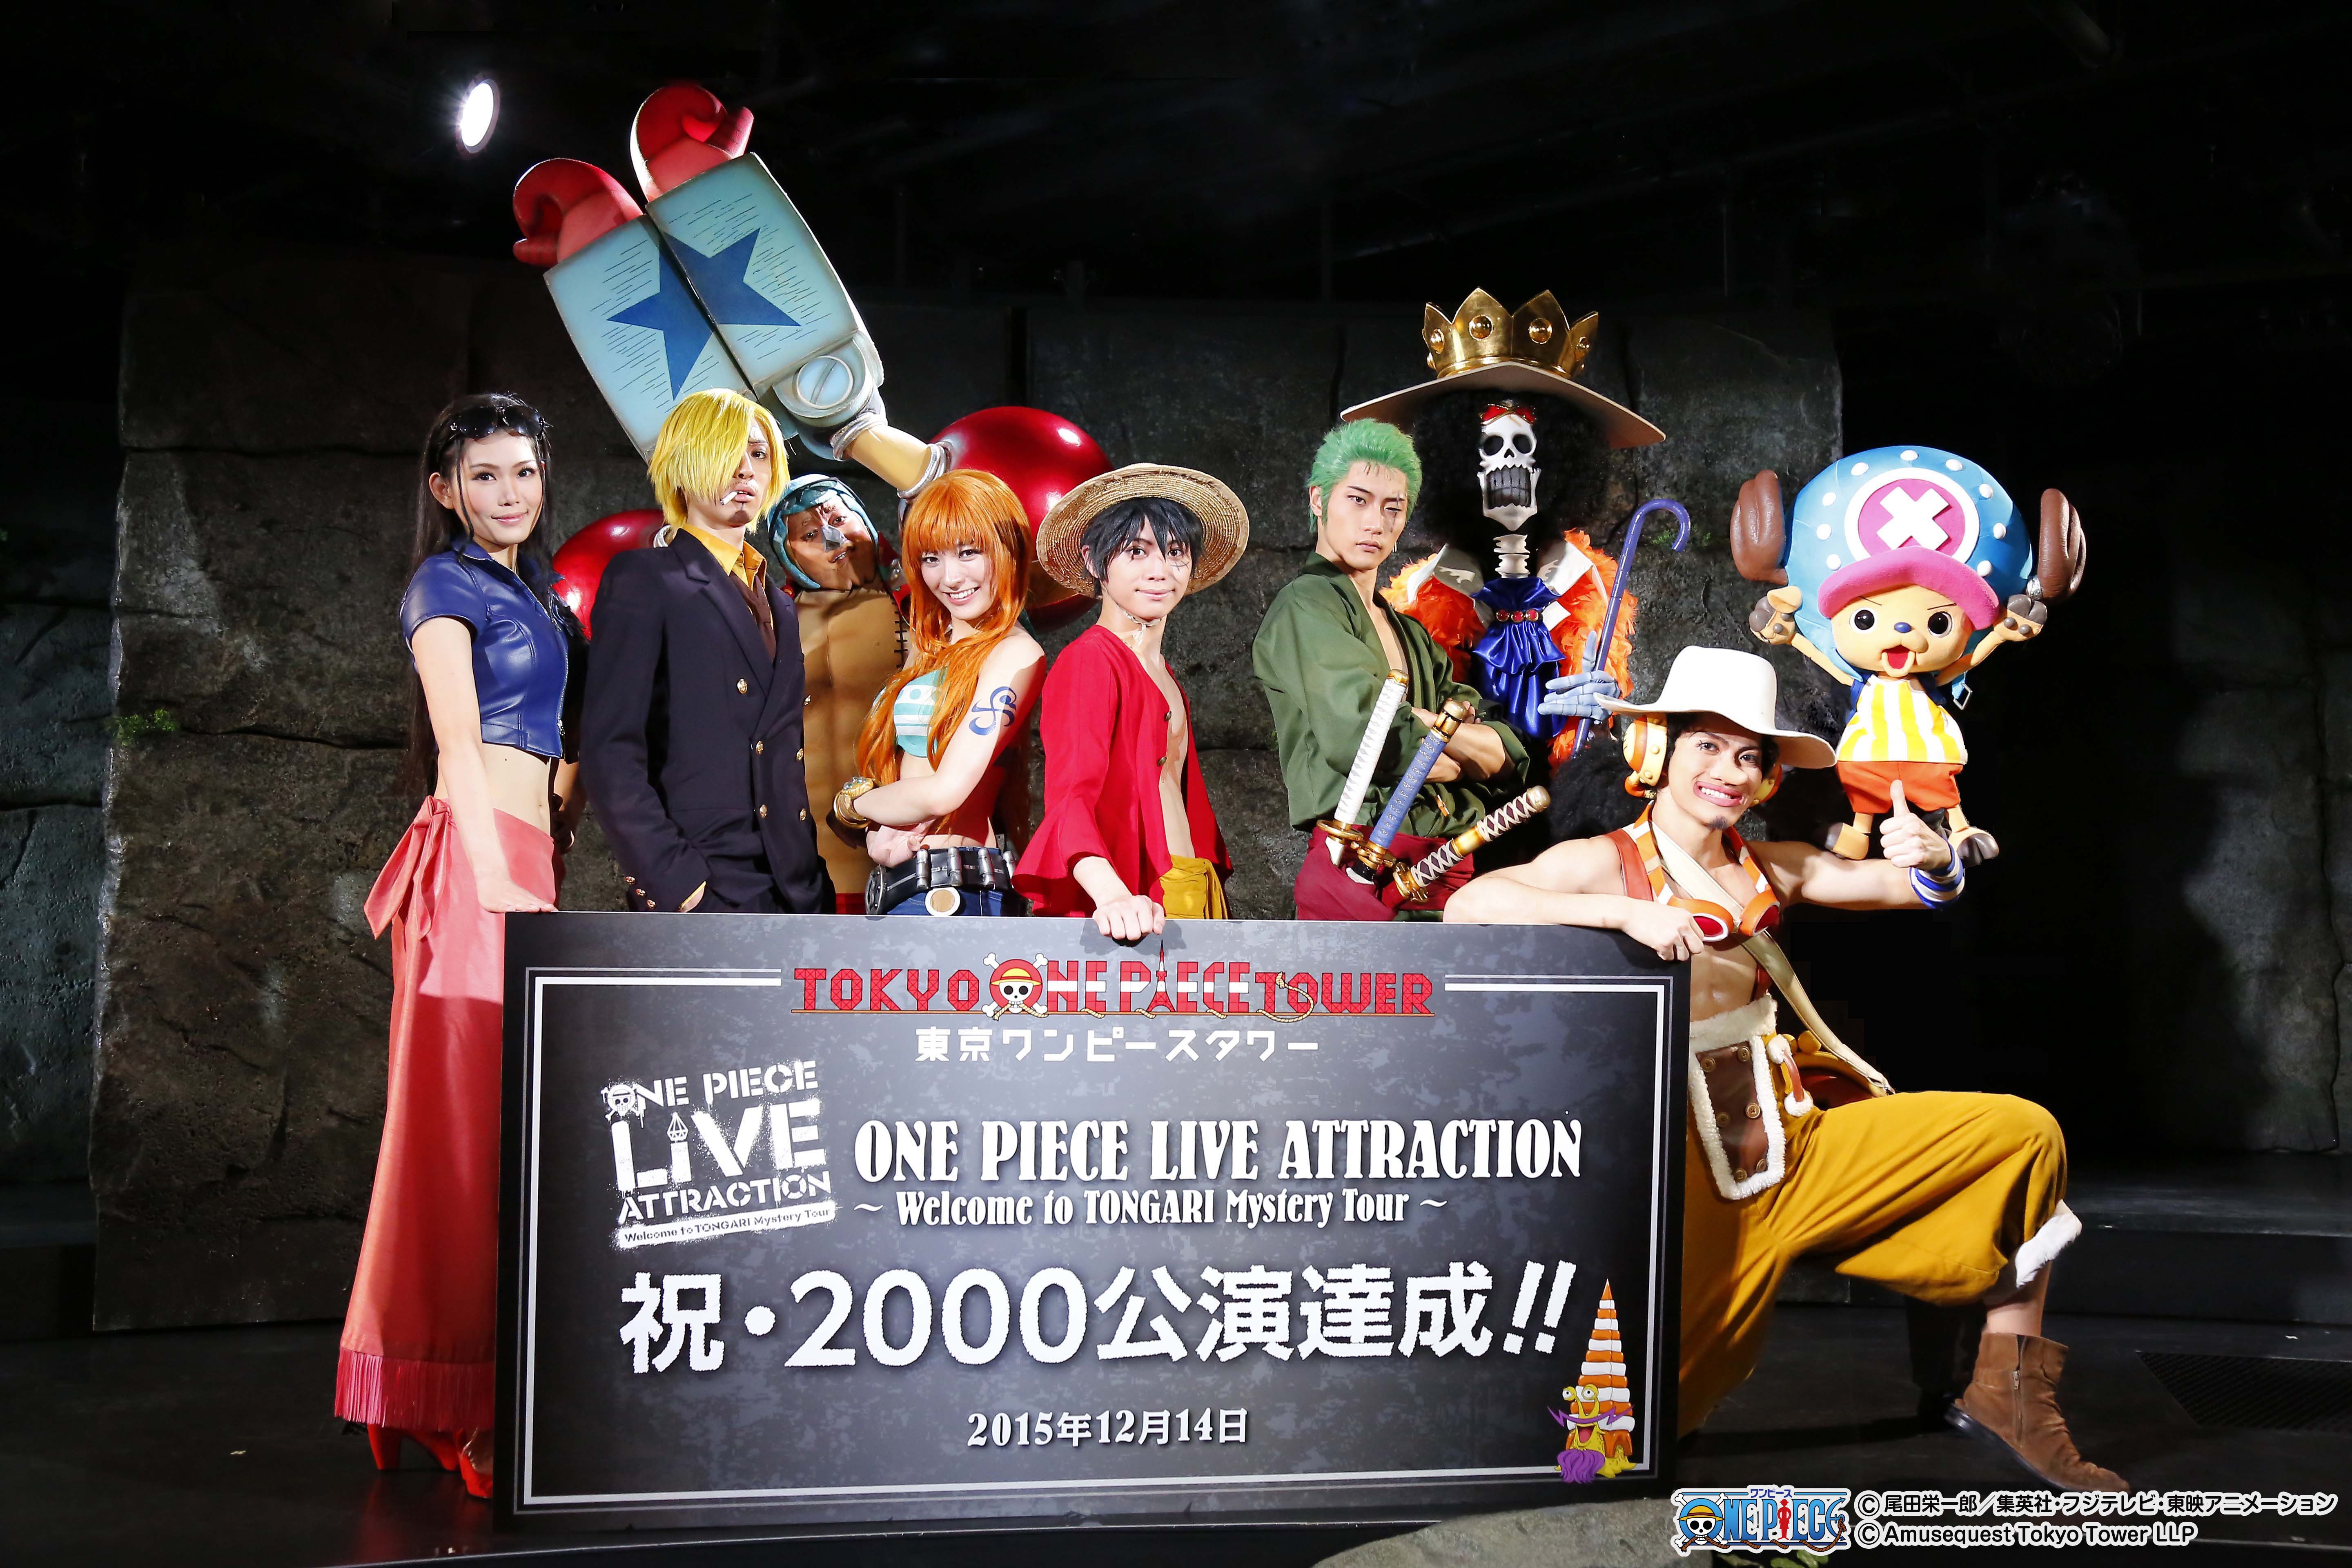 東京ワンピースタワー で大人気のライブショー One Piece Live Attraction 開業9ヶ月で早くも00公演を突破 東京ワンピースタワーのプレスリリース